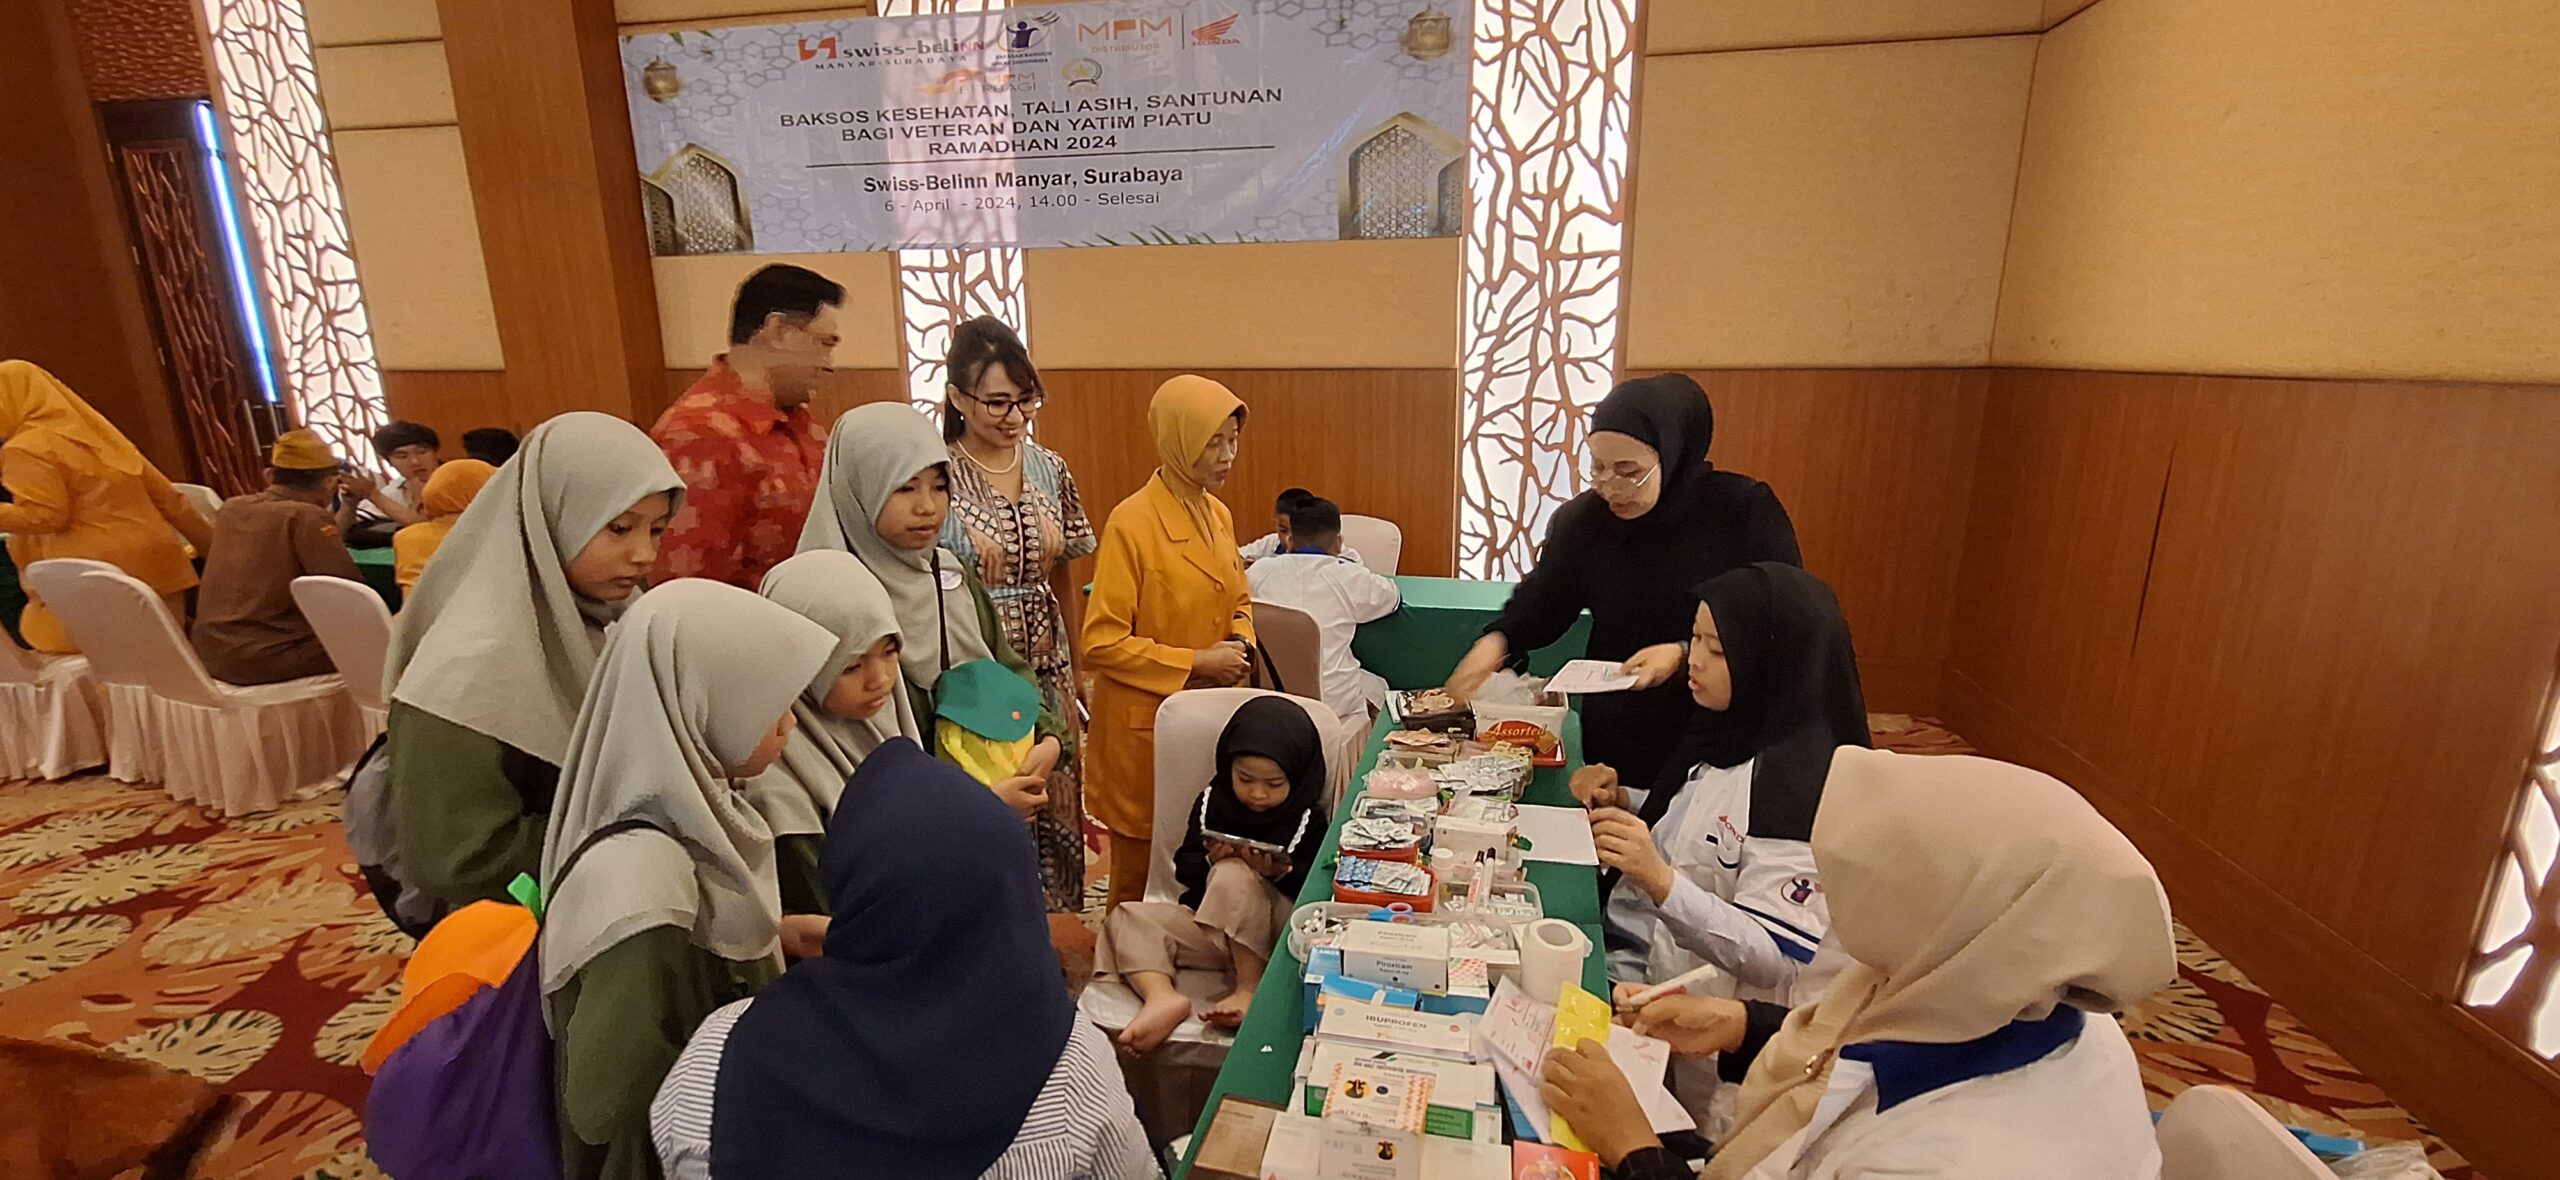 Swiss-Belinn Manyar Surabaya Menebarkan Kebaikan dalam Kegiatan CSR Bulan Ramadhan